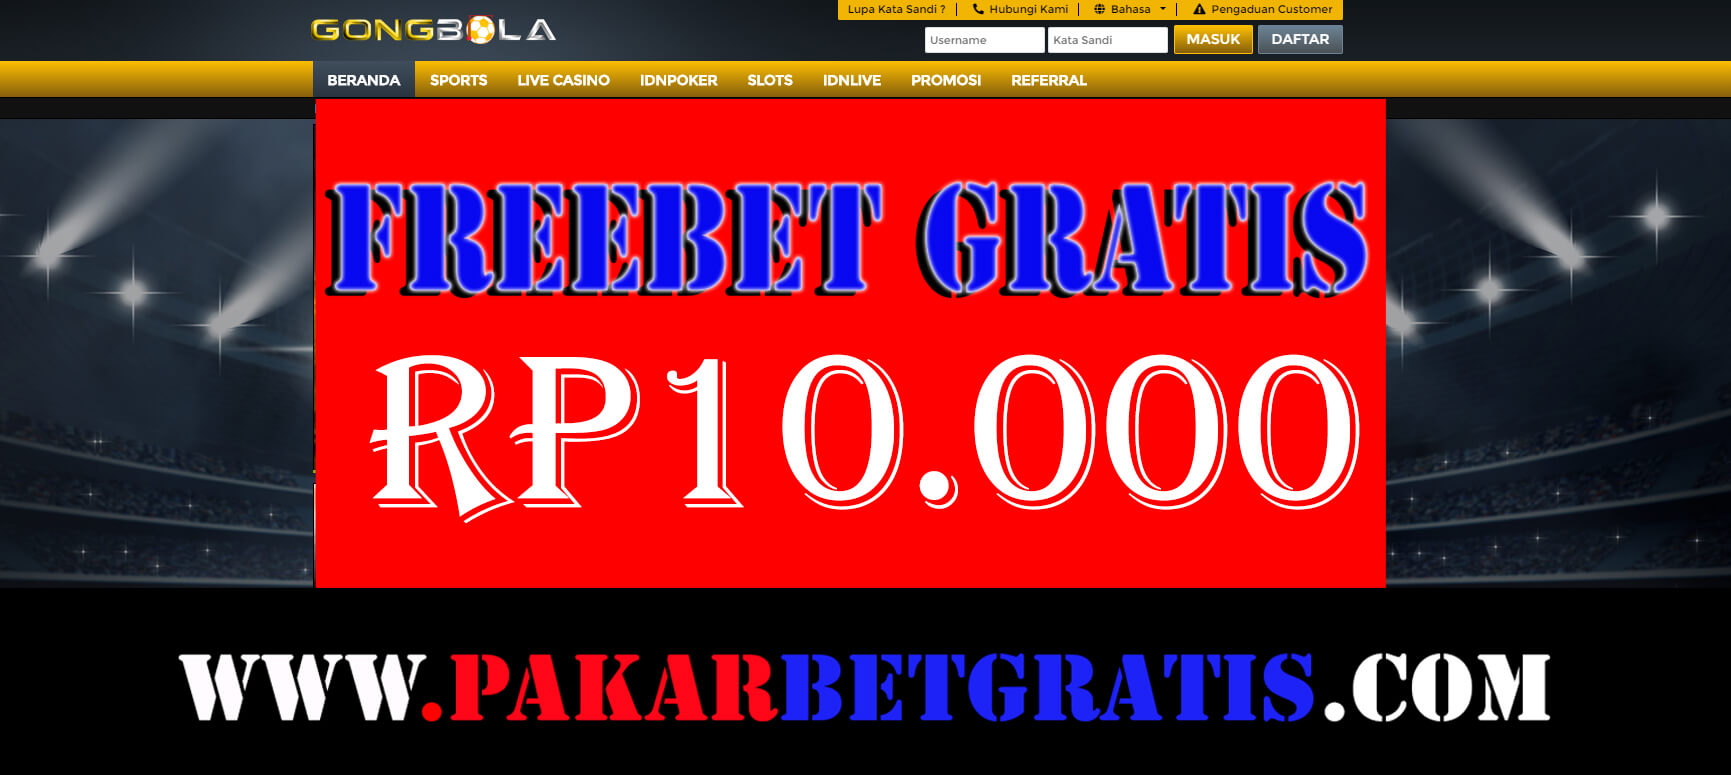 Freebet Gratis Gongbola Rp 10.000 Tanpa Deposit